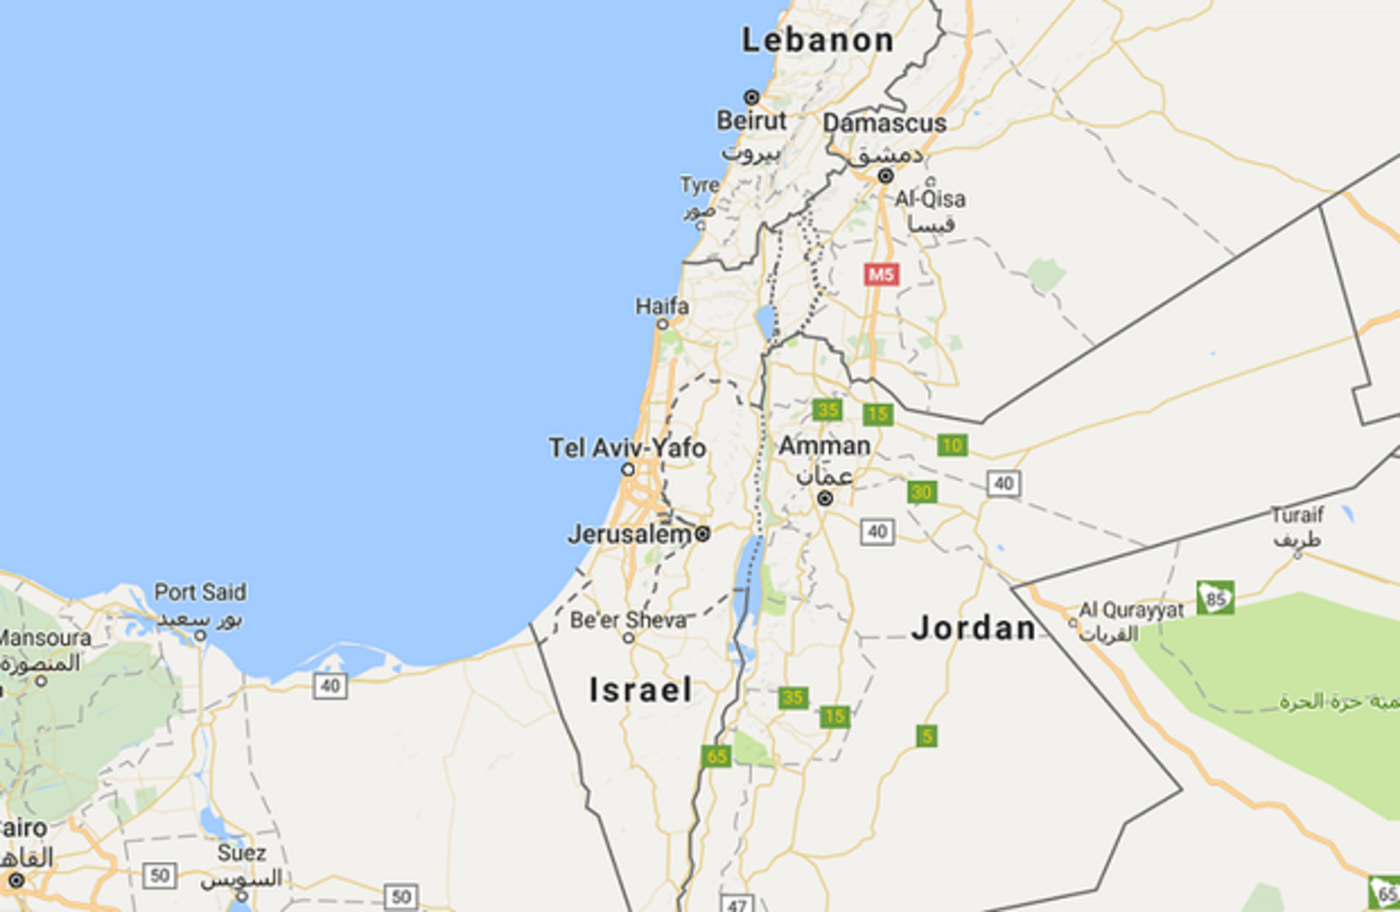 Le Statut De La Palestine Sur Google Maps Symptôme Dun